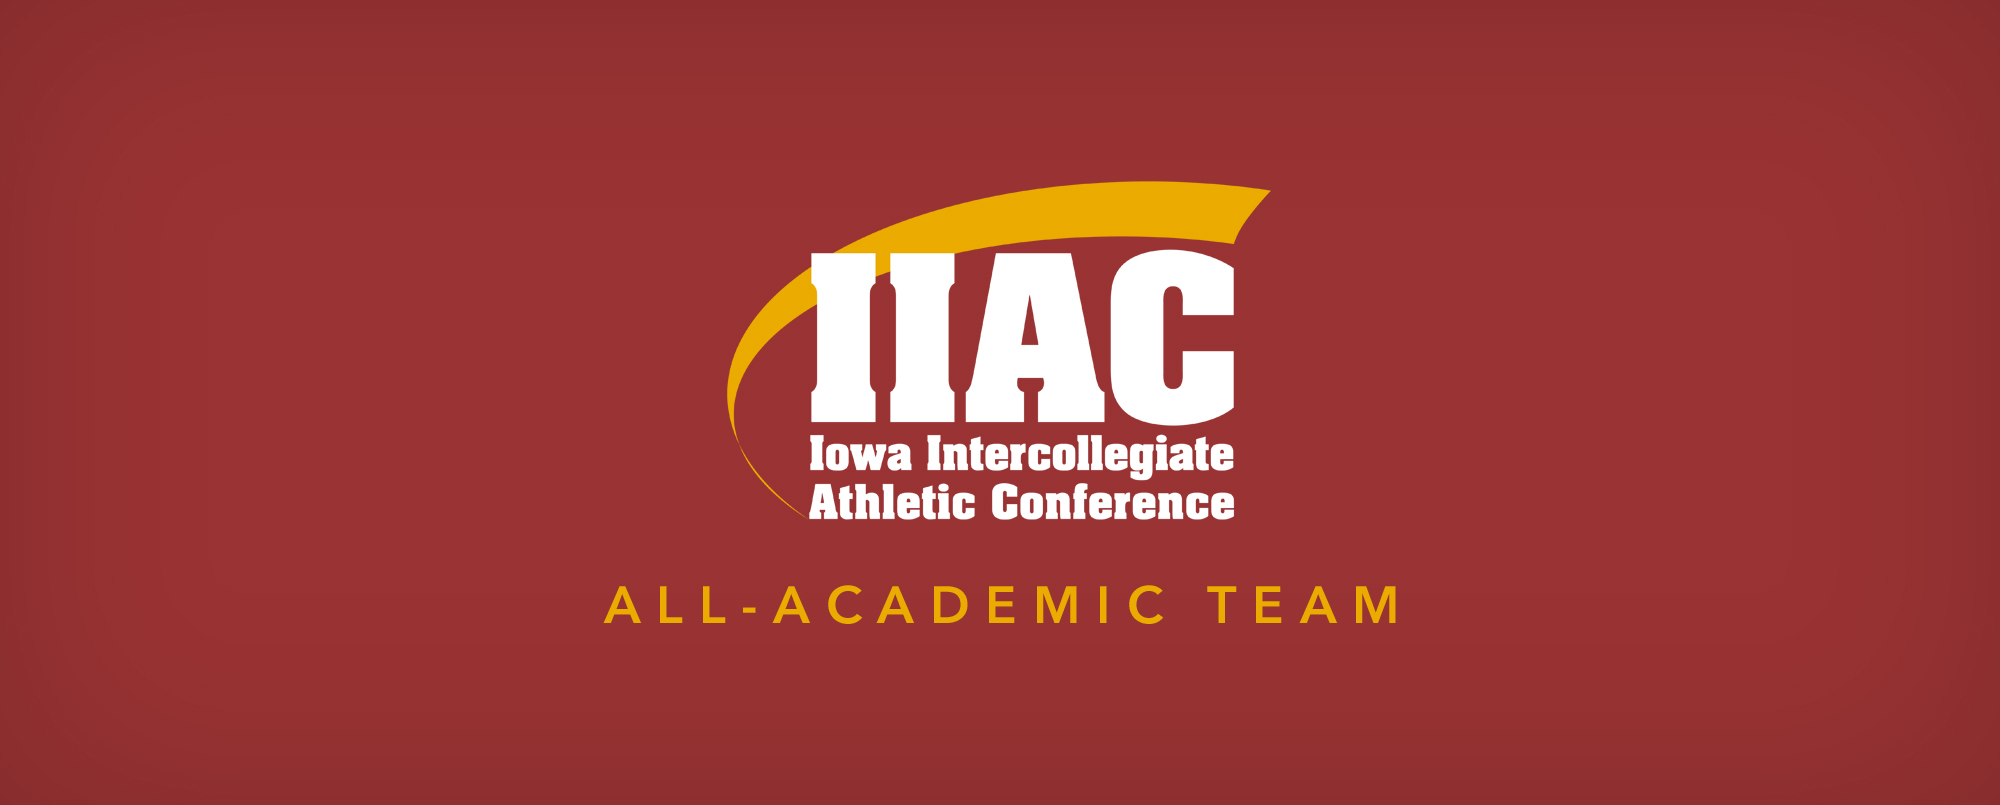 Simpson places 39 on IIAC All-Academic Team